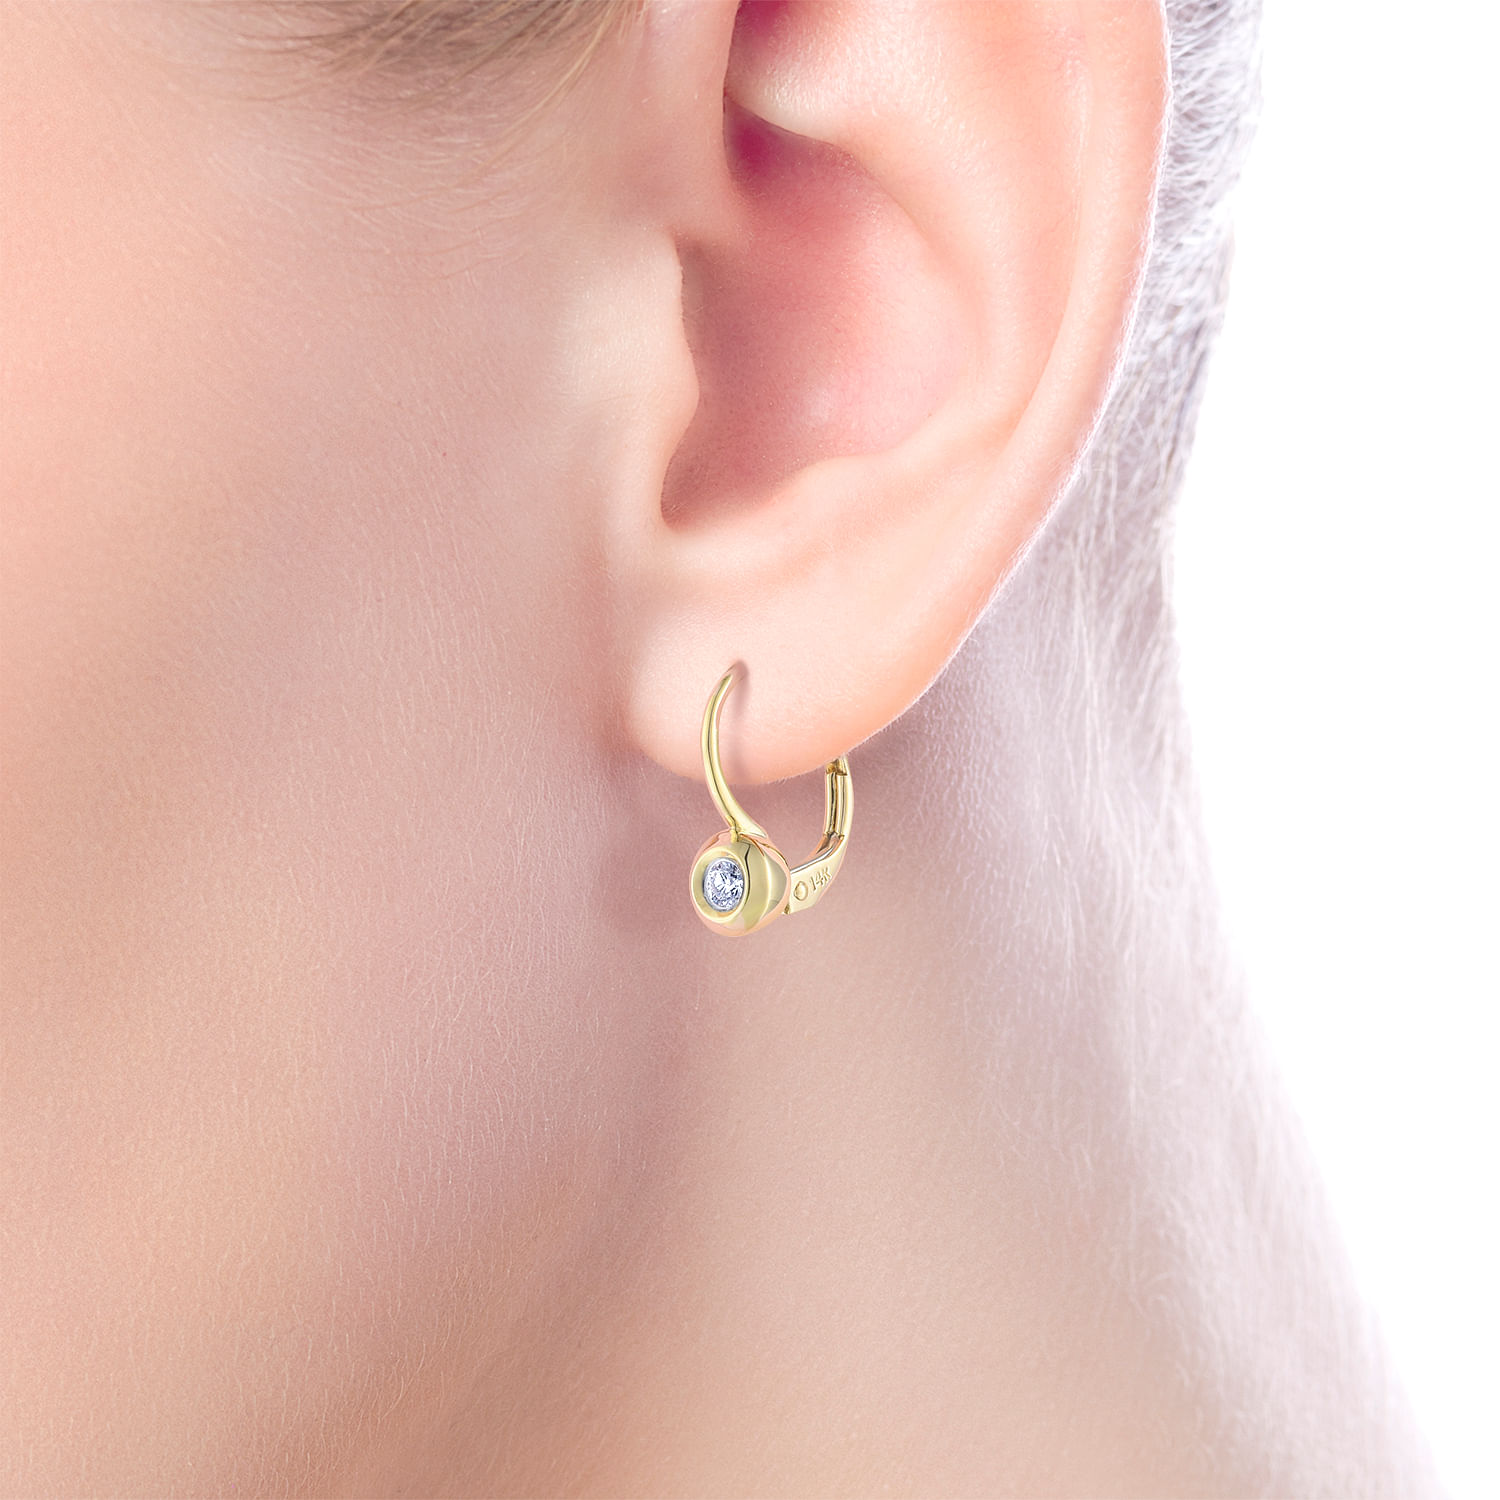 14K Yellow Gold 15mm Round Bezel Diamond Drop Earrings